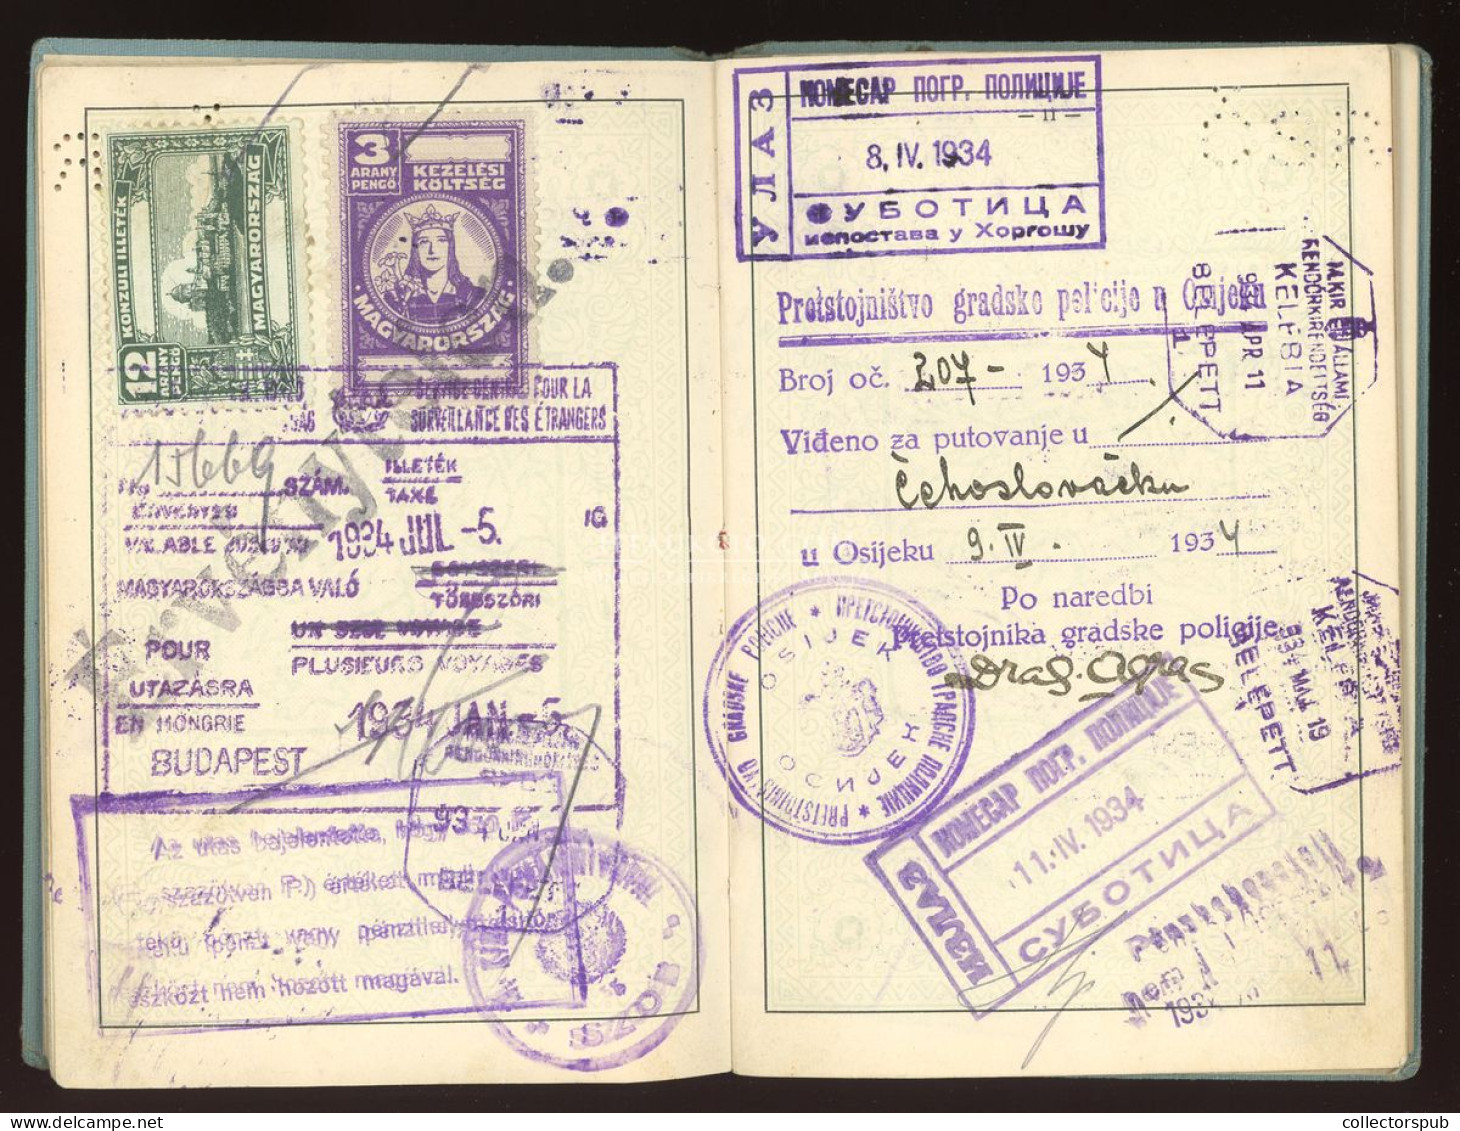 ÚTLEVÉL 1933. Csehszlovát útlevél, magyar személy részére, konzuli illetékbélyegekkel, érdekes darab! passport